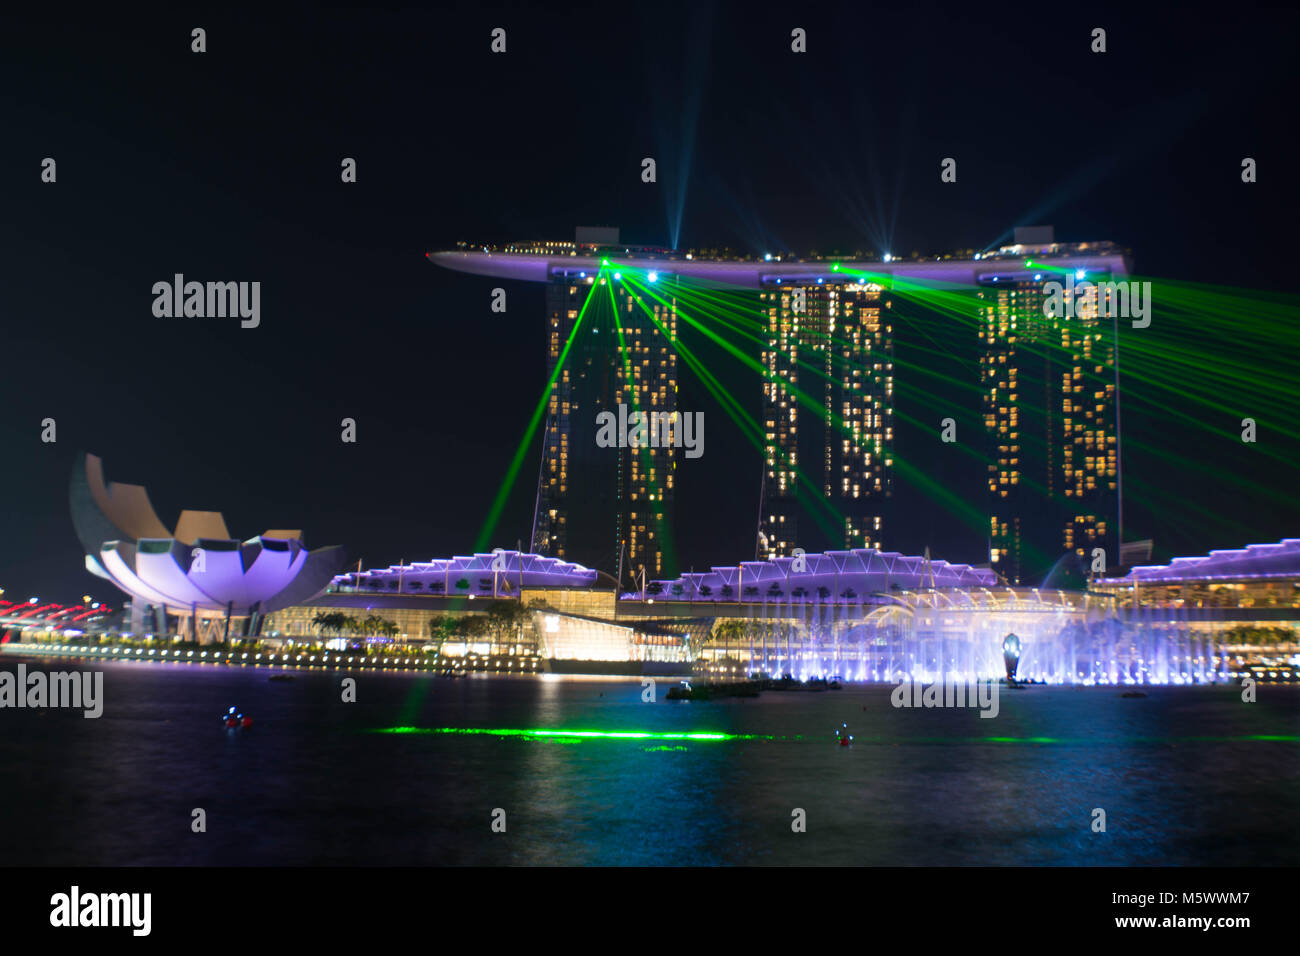 La célèbre Marina Bay Sands Hotel au cours de son spectacle de lumière avec sa réflexion sur la rivière de Singapour dans la marina à Singapour de nuit. Banque D'Images